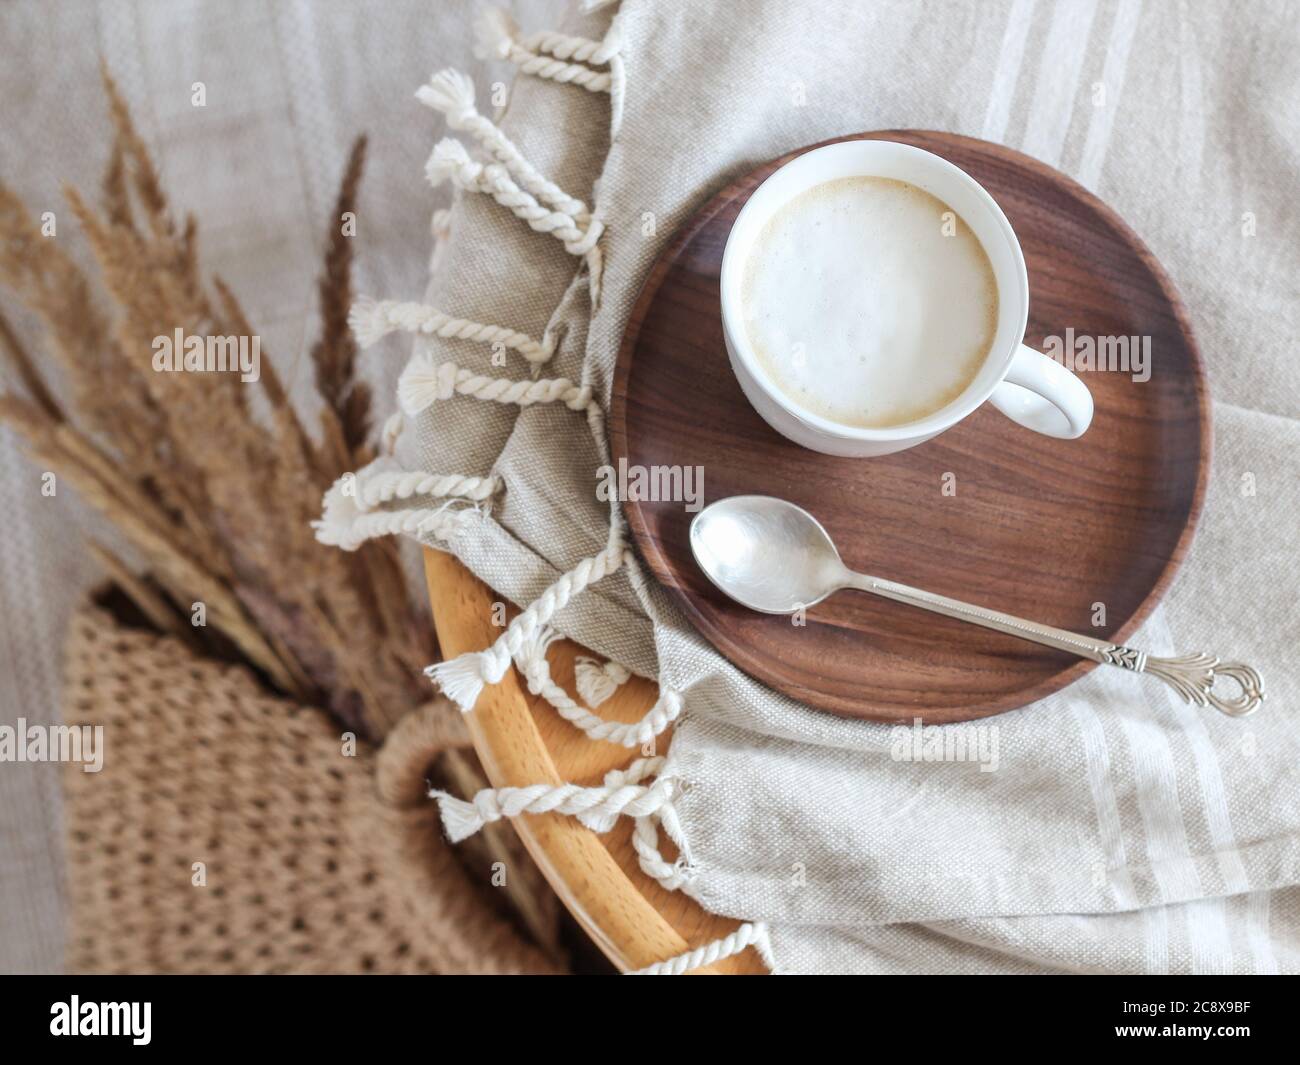 Una tazza di caffè con latte su un piatto di legno e bentgrass secchi in un cesto Foto Stock